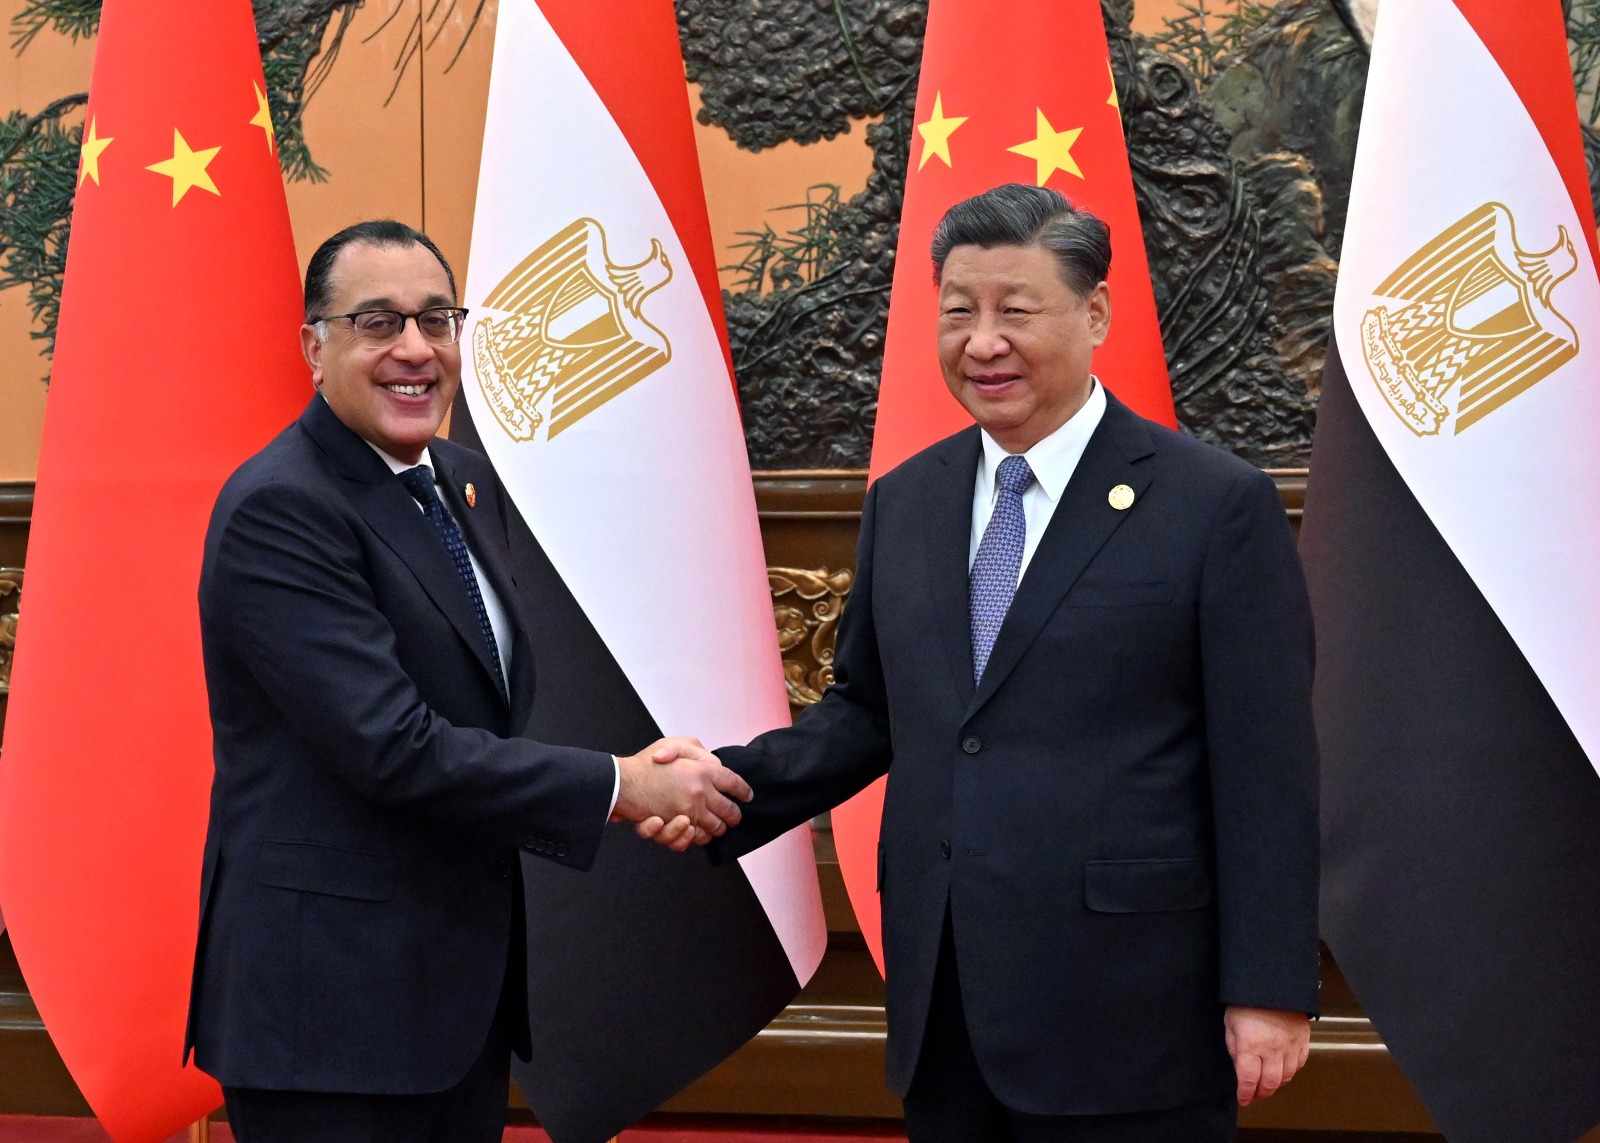 الرئيس الصيني: مصر من أكبر البلاد العربية والإسلامية والإفريقية وحققت  تقدمًا ملحوظًا في بناء الجمهورية الجديدة - بوابة الأهرام